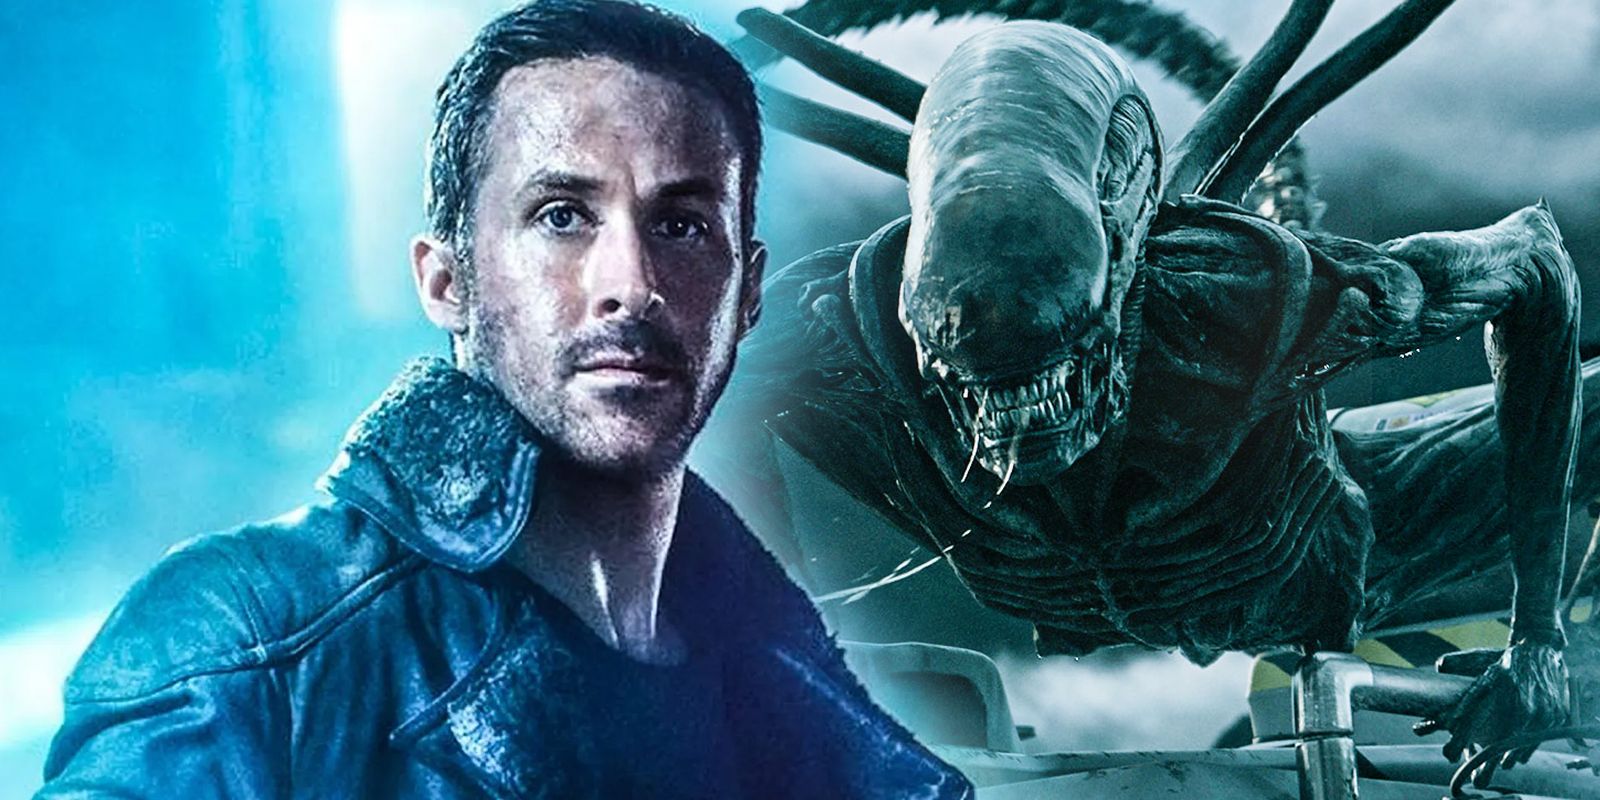 Blade Runner 2049 and Alien Covenant